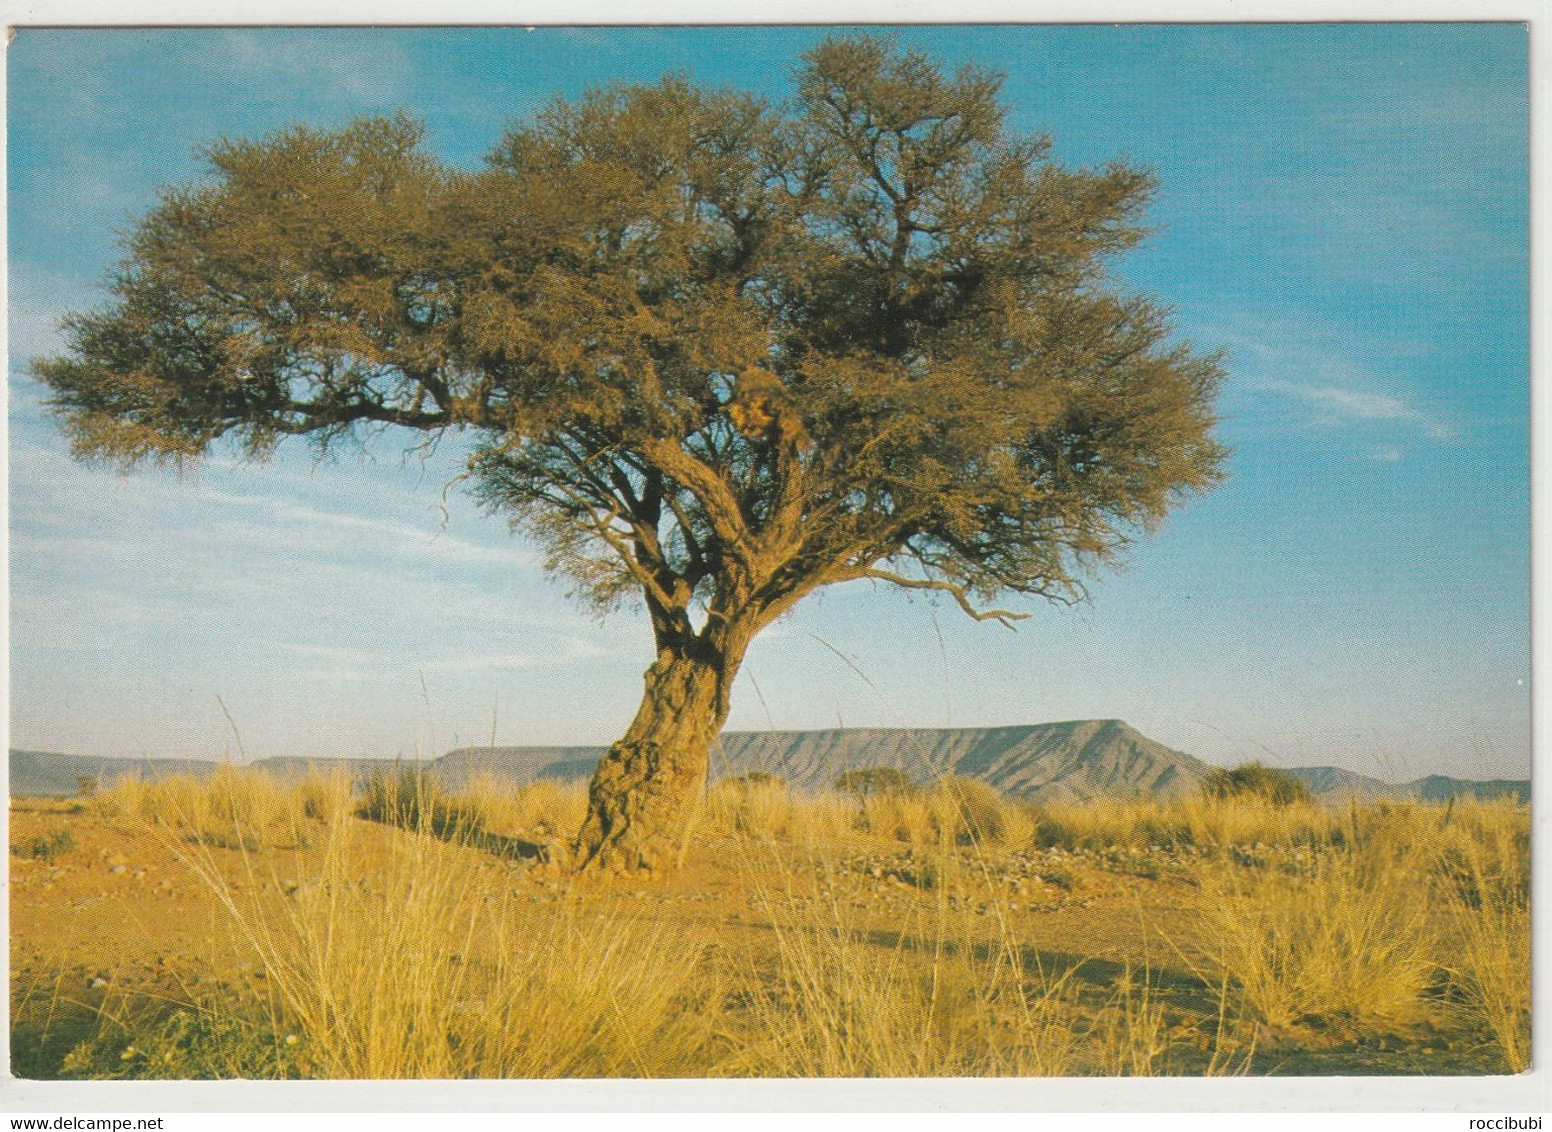 SWA, Kameldornbaum - Namibië